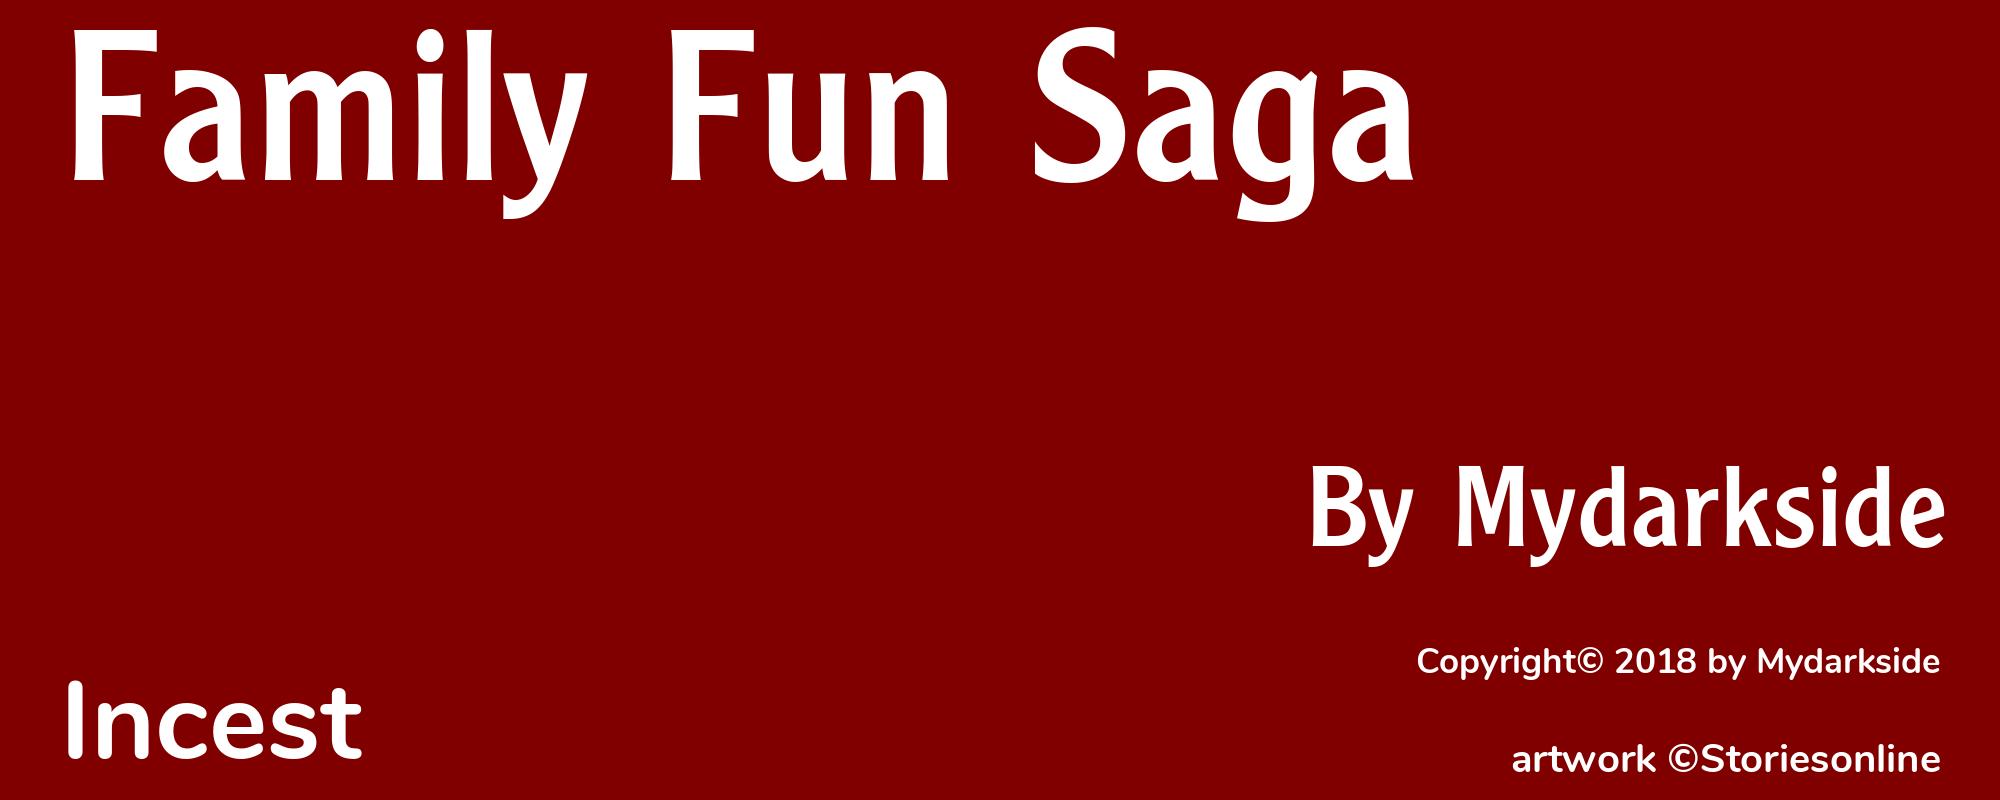 Family Fun Saga - Cover